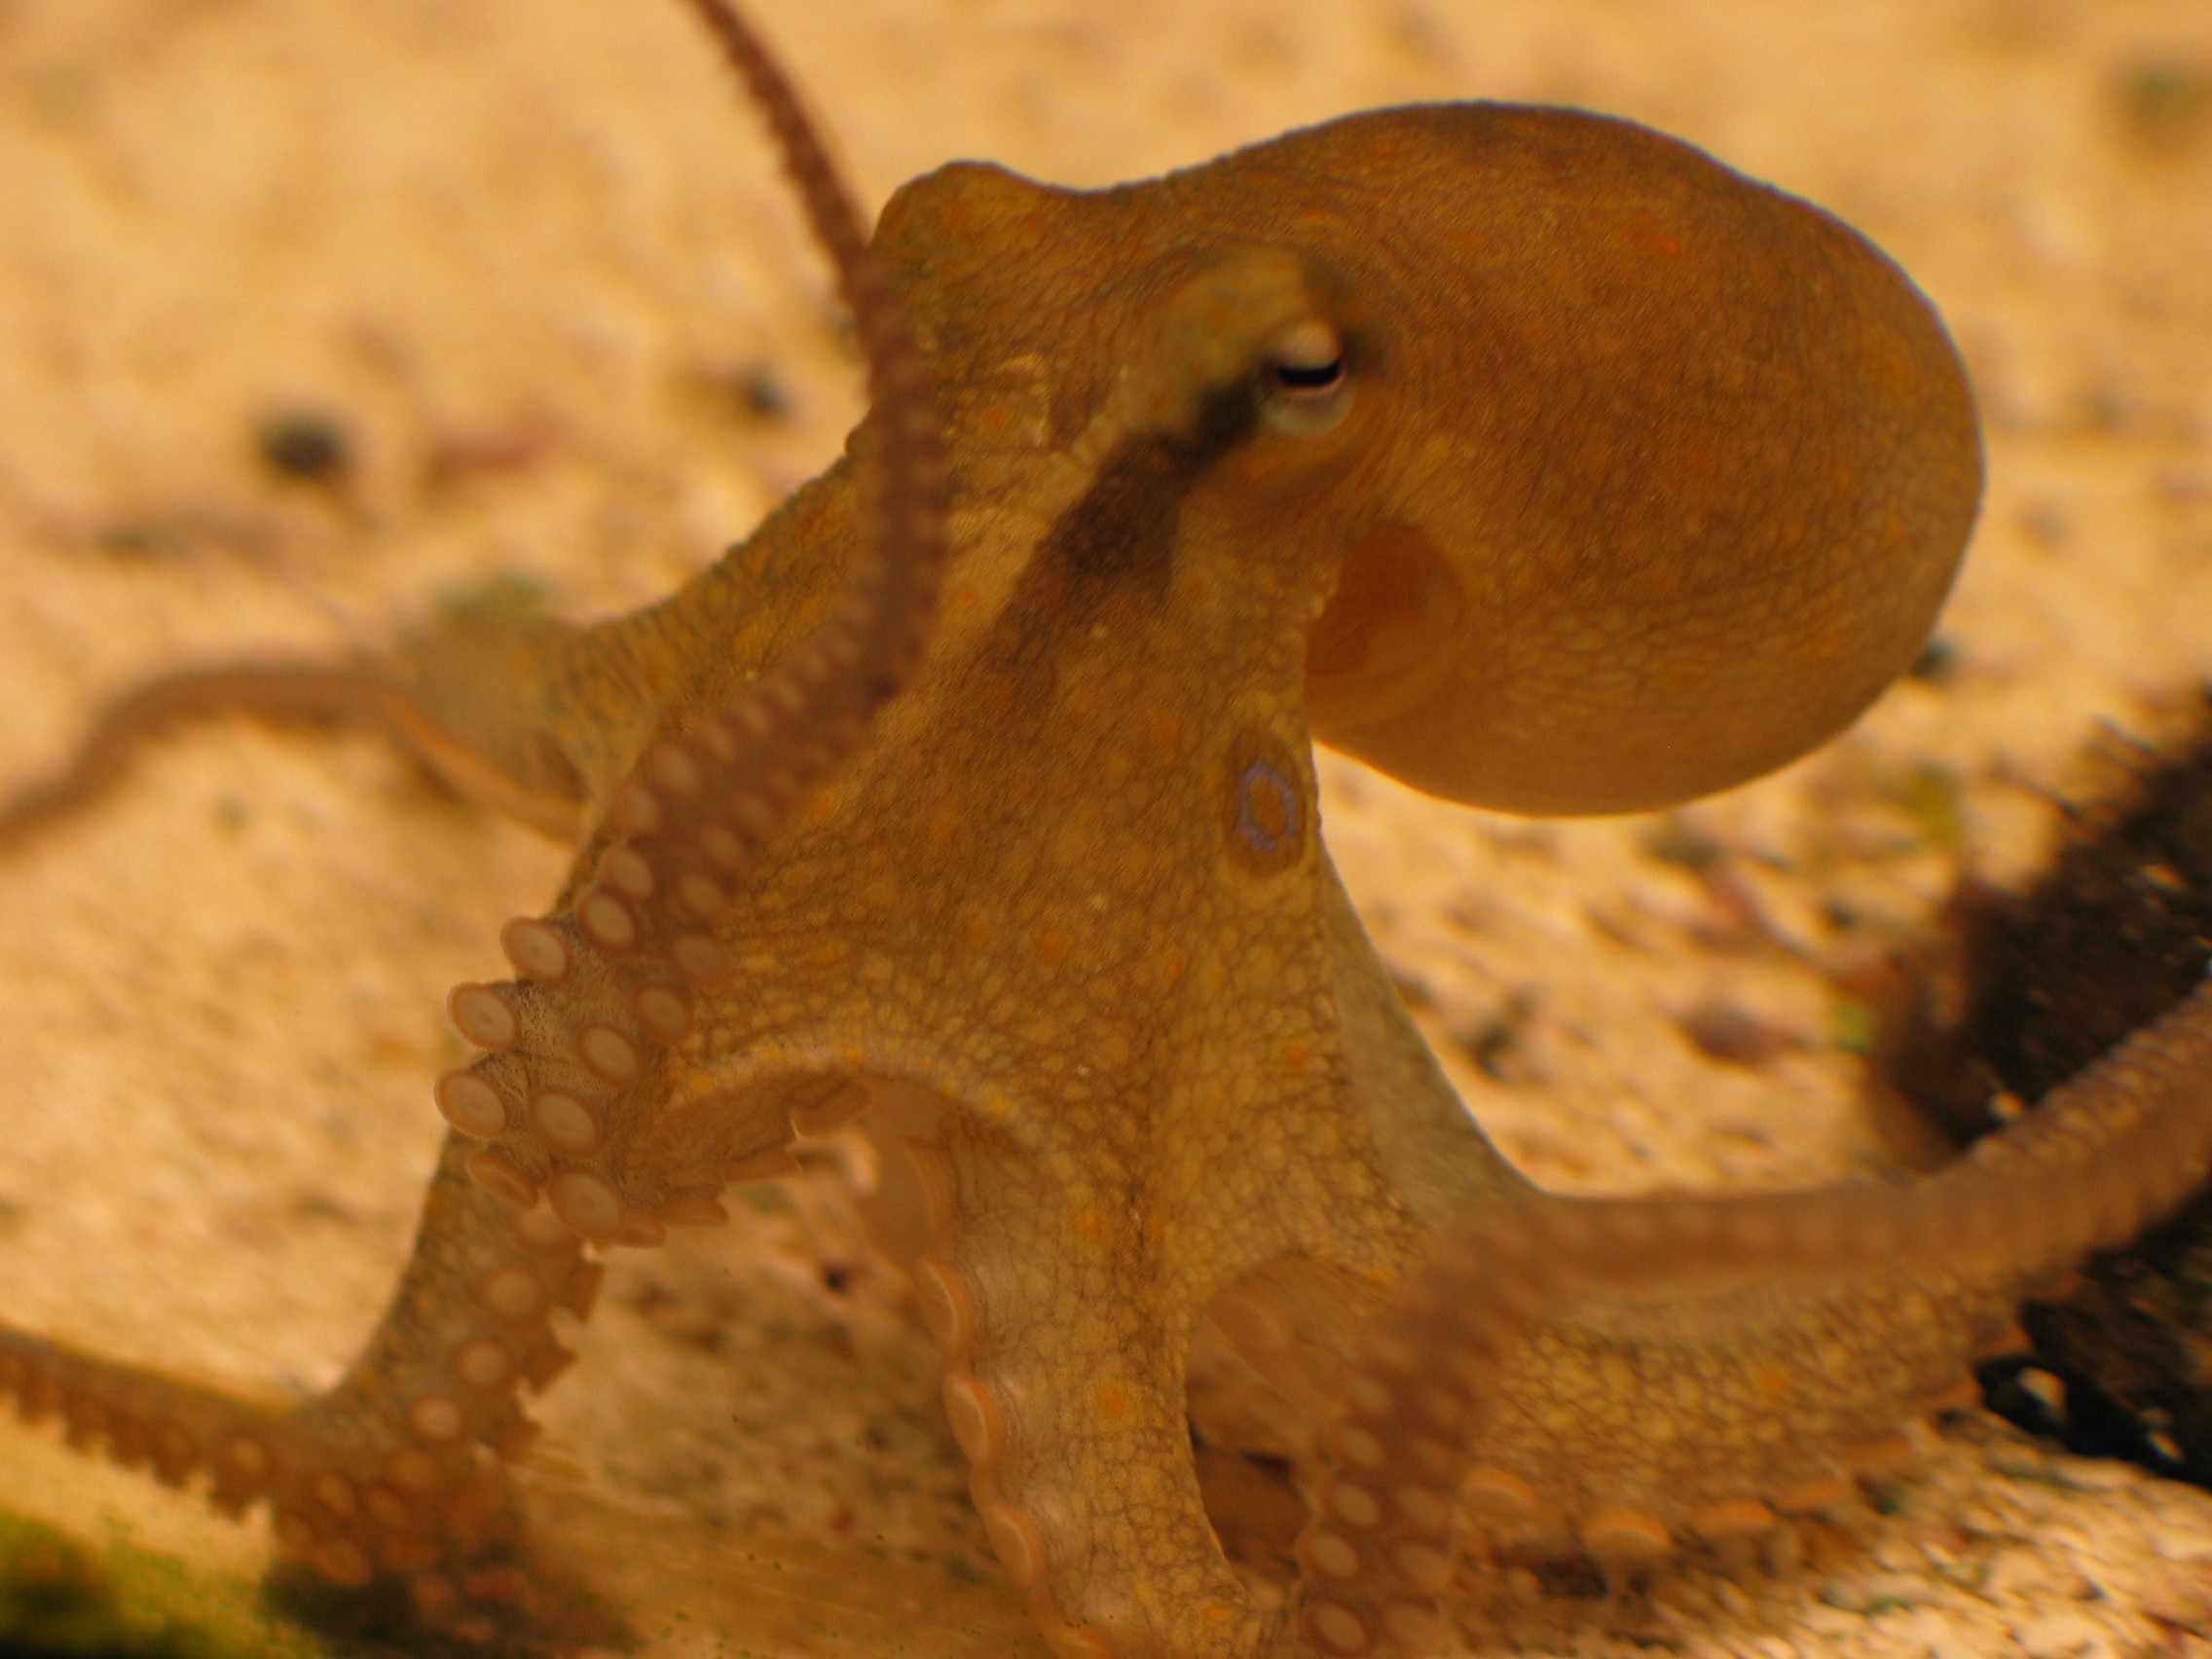 Rudiger's octopus